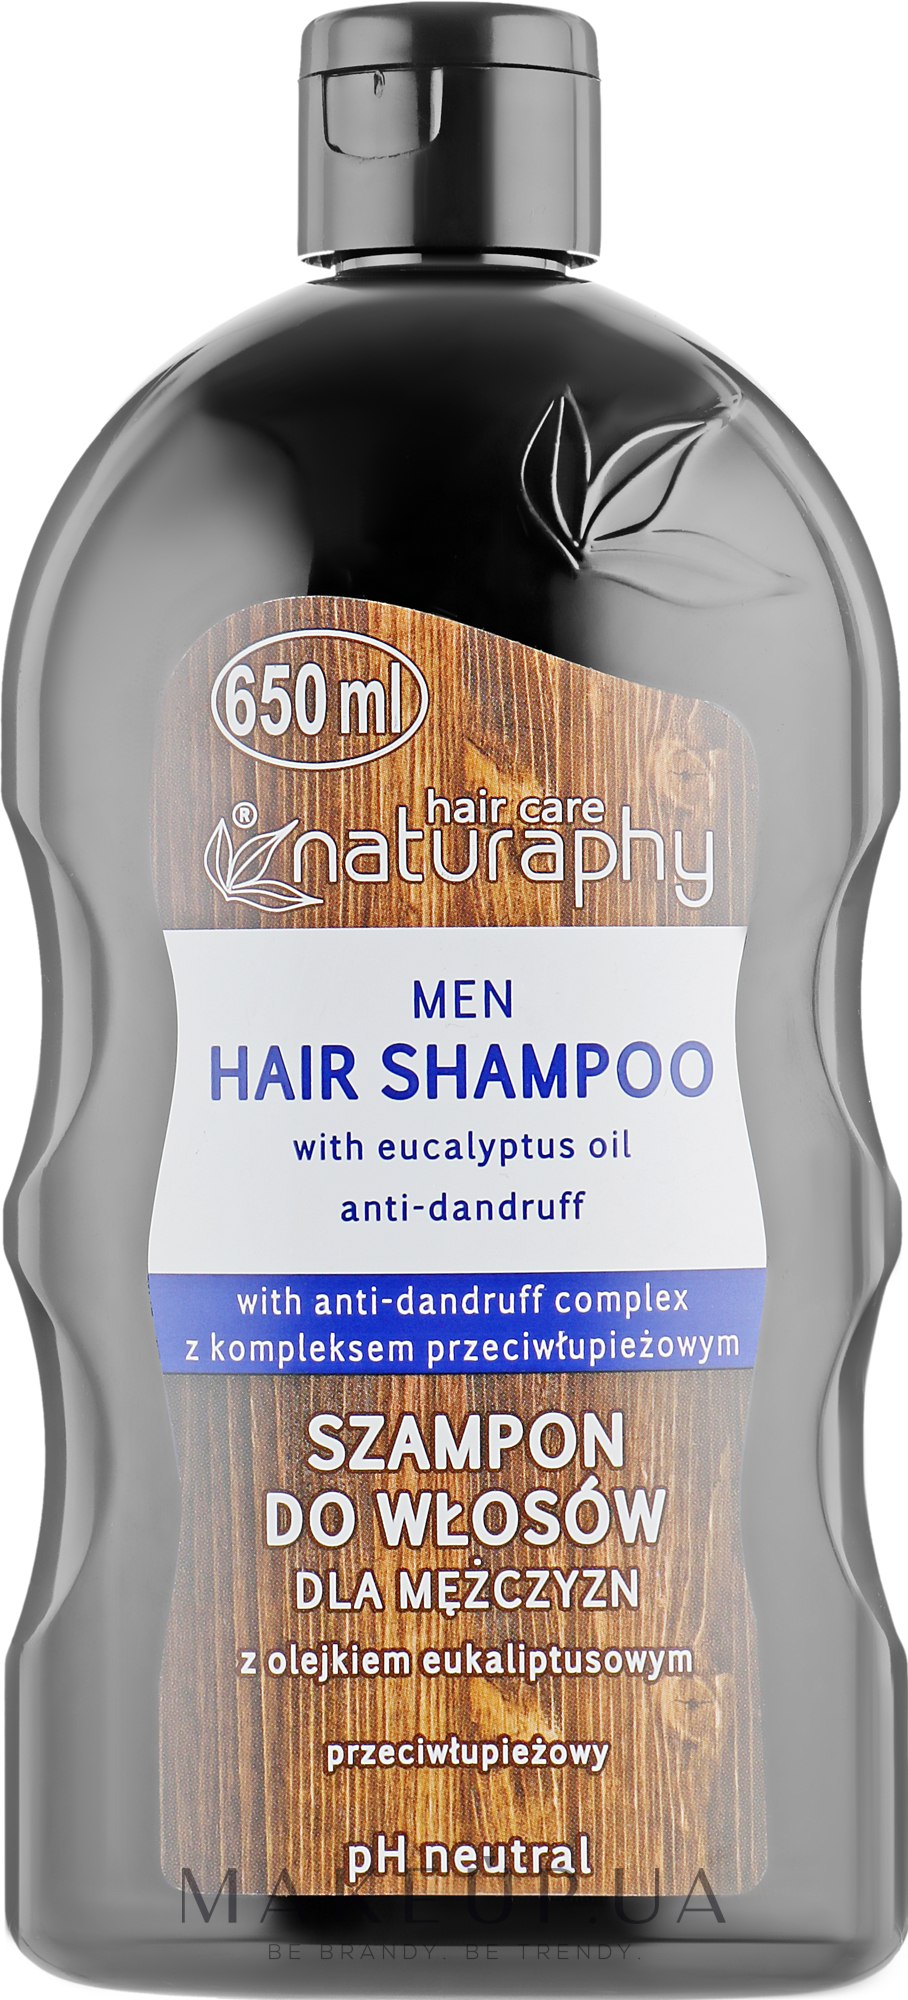 Шампунь против перхоти с маслом эвкалипта для мужчин - Naturaphy Men Hair Shampoo — фото 650ml